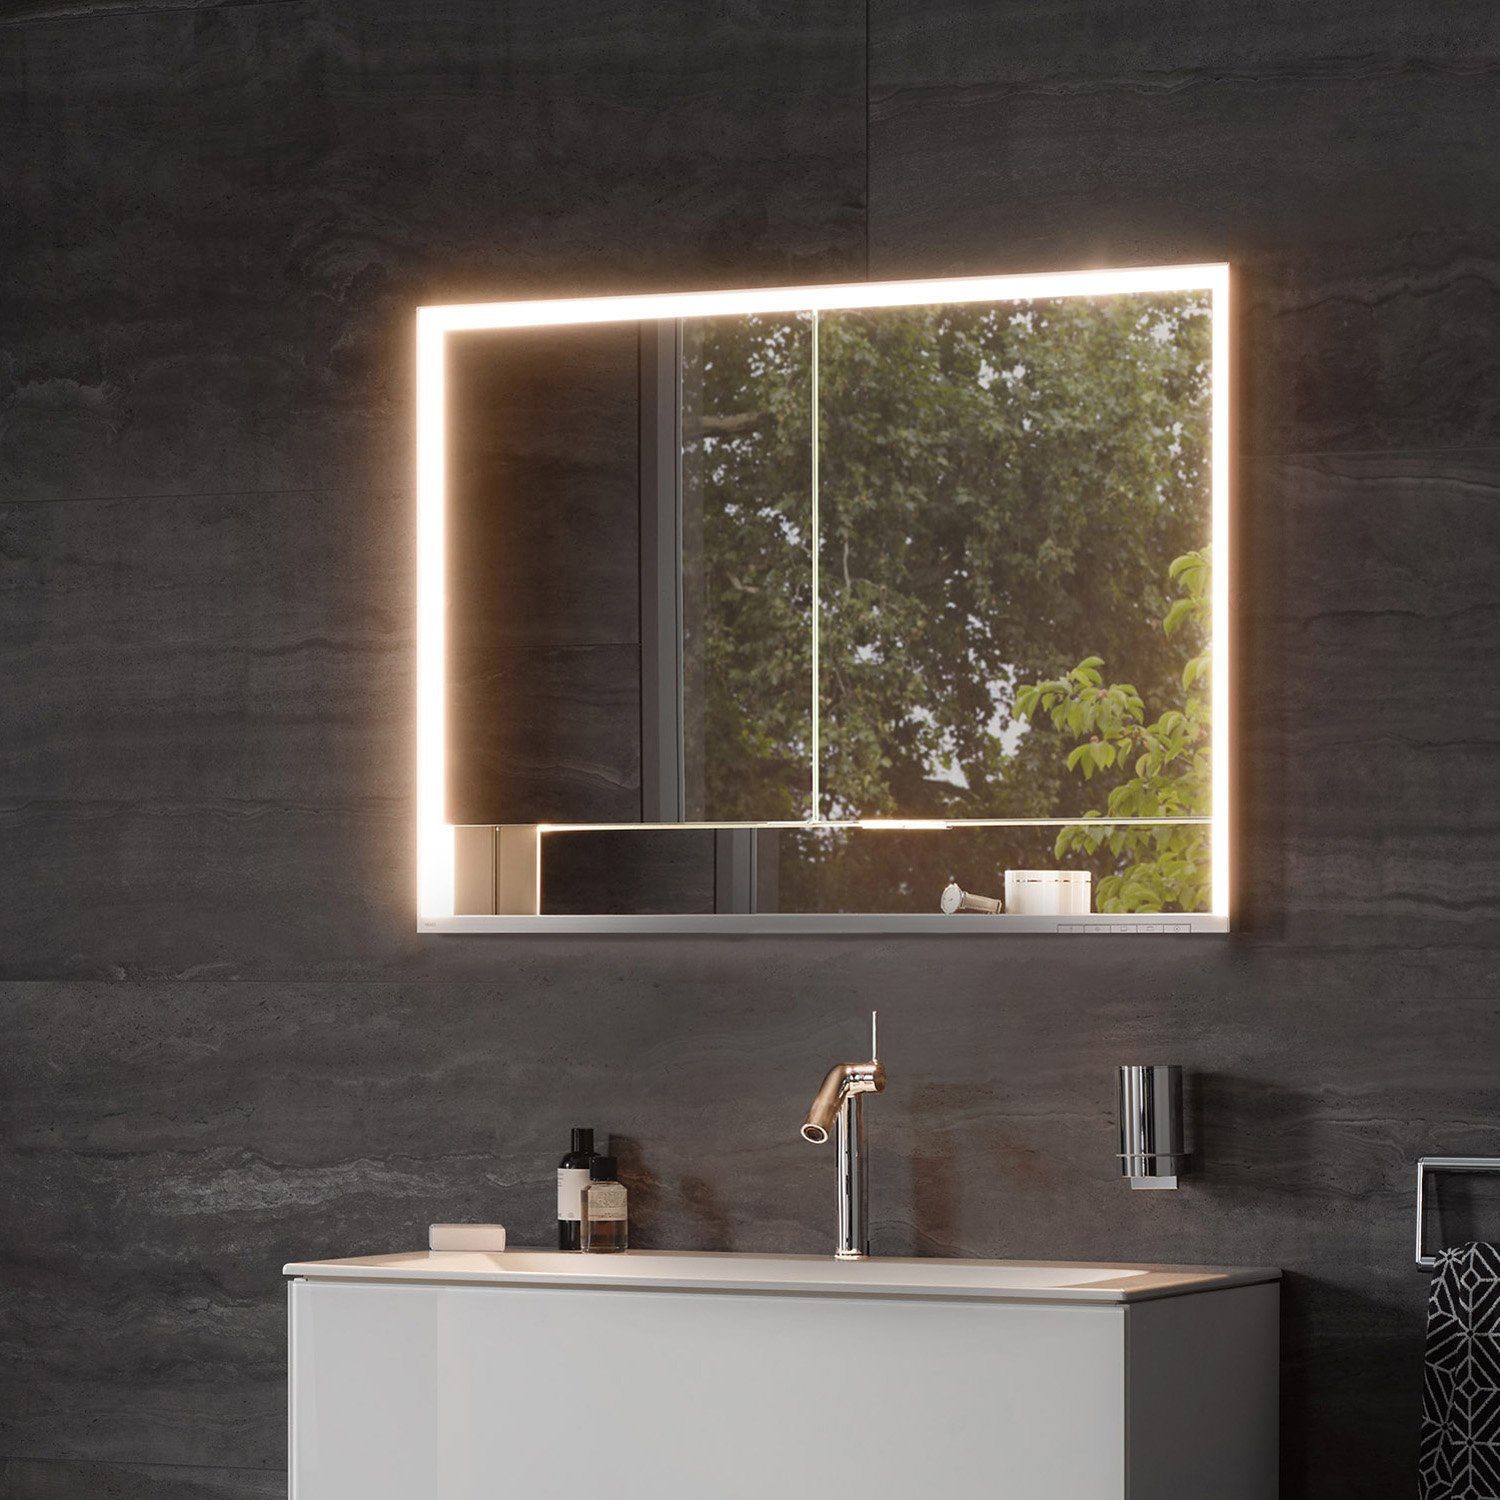 Keuco Spiegelschrank Royal Lumos (Badezimmerspiegelschrank mit Beleuchtung  LED), Unterputz-Einbau, mit Steckdose, dimmbar, einstellbare Lichtfarbe,  Aluminium-Korpus, 2-türig, 80 cm breit